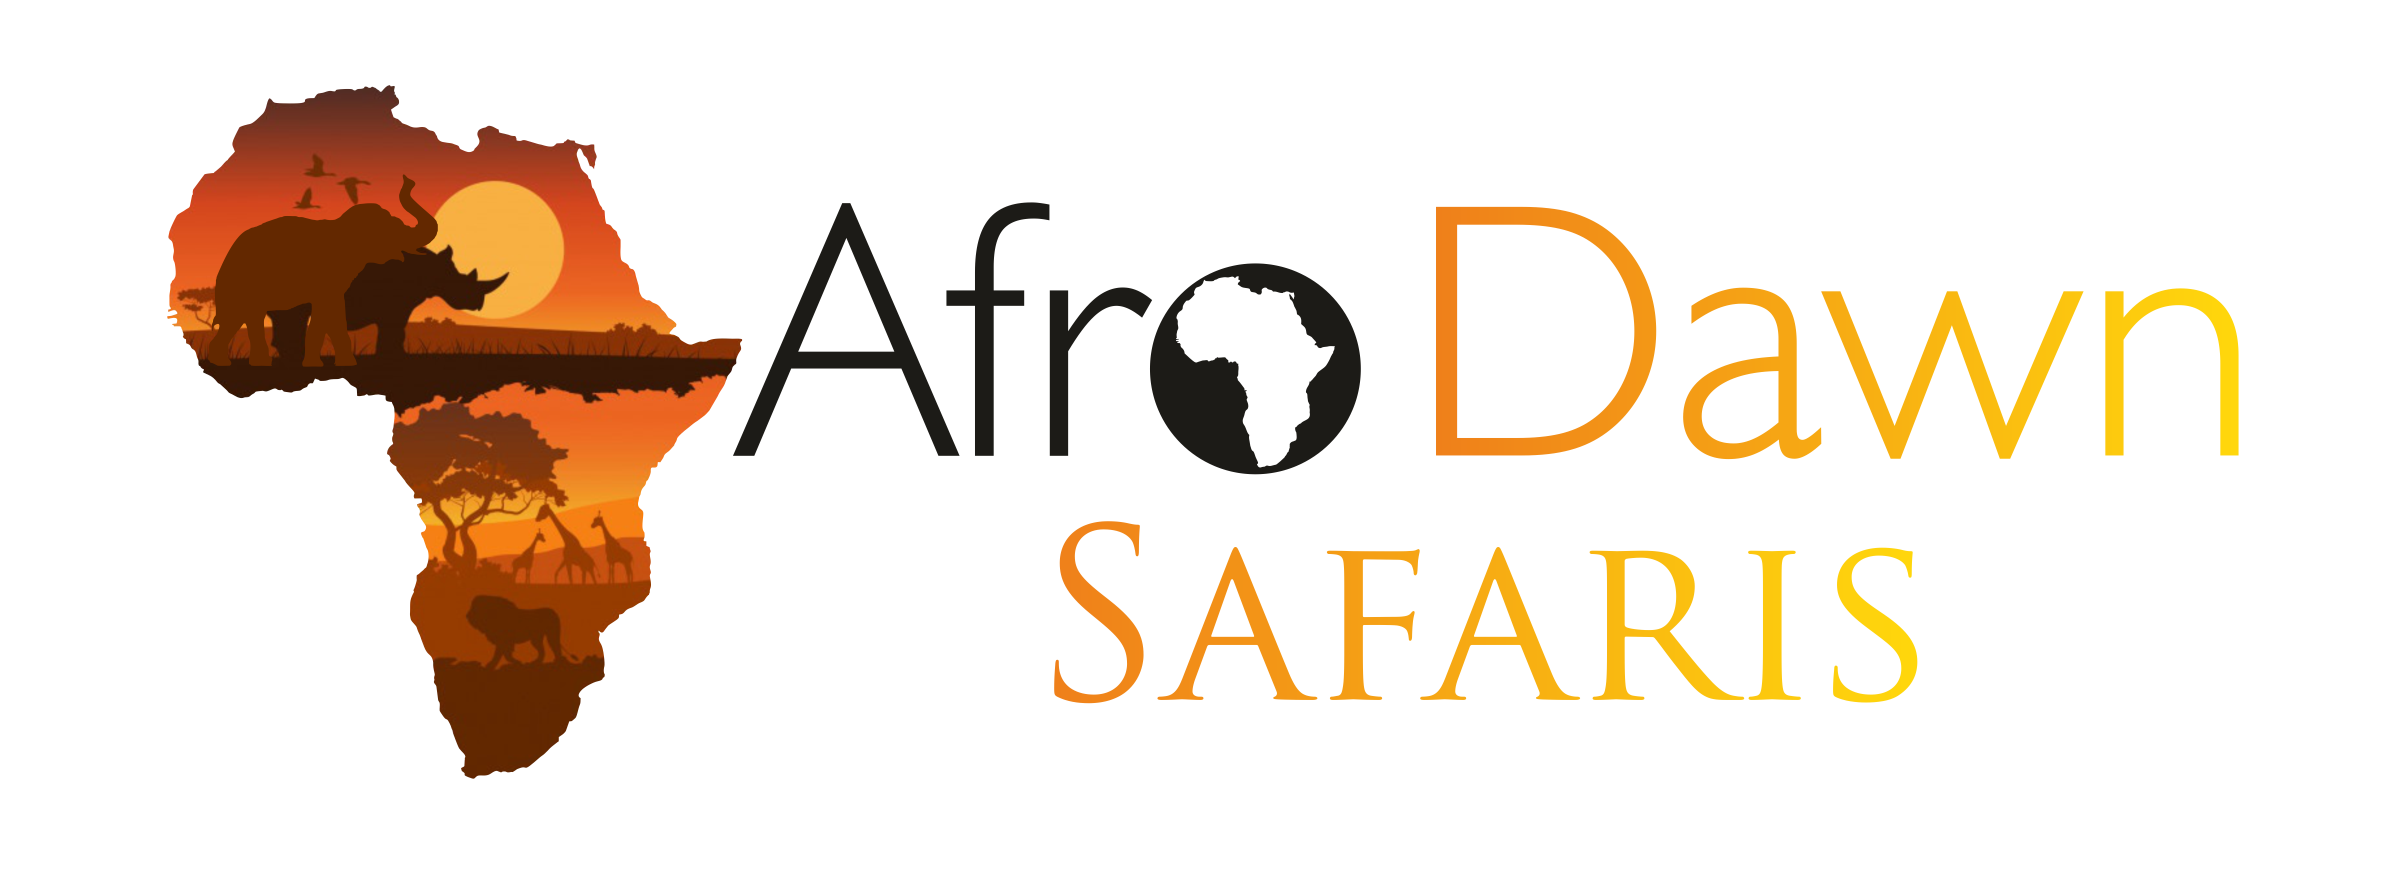 Afro Dawn Safaris